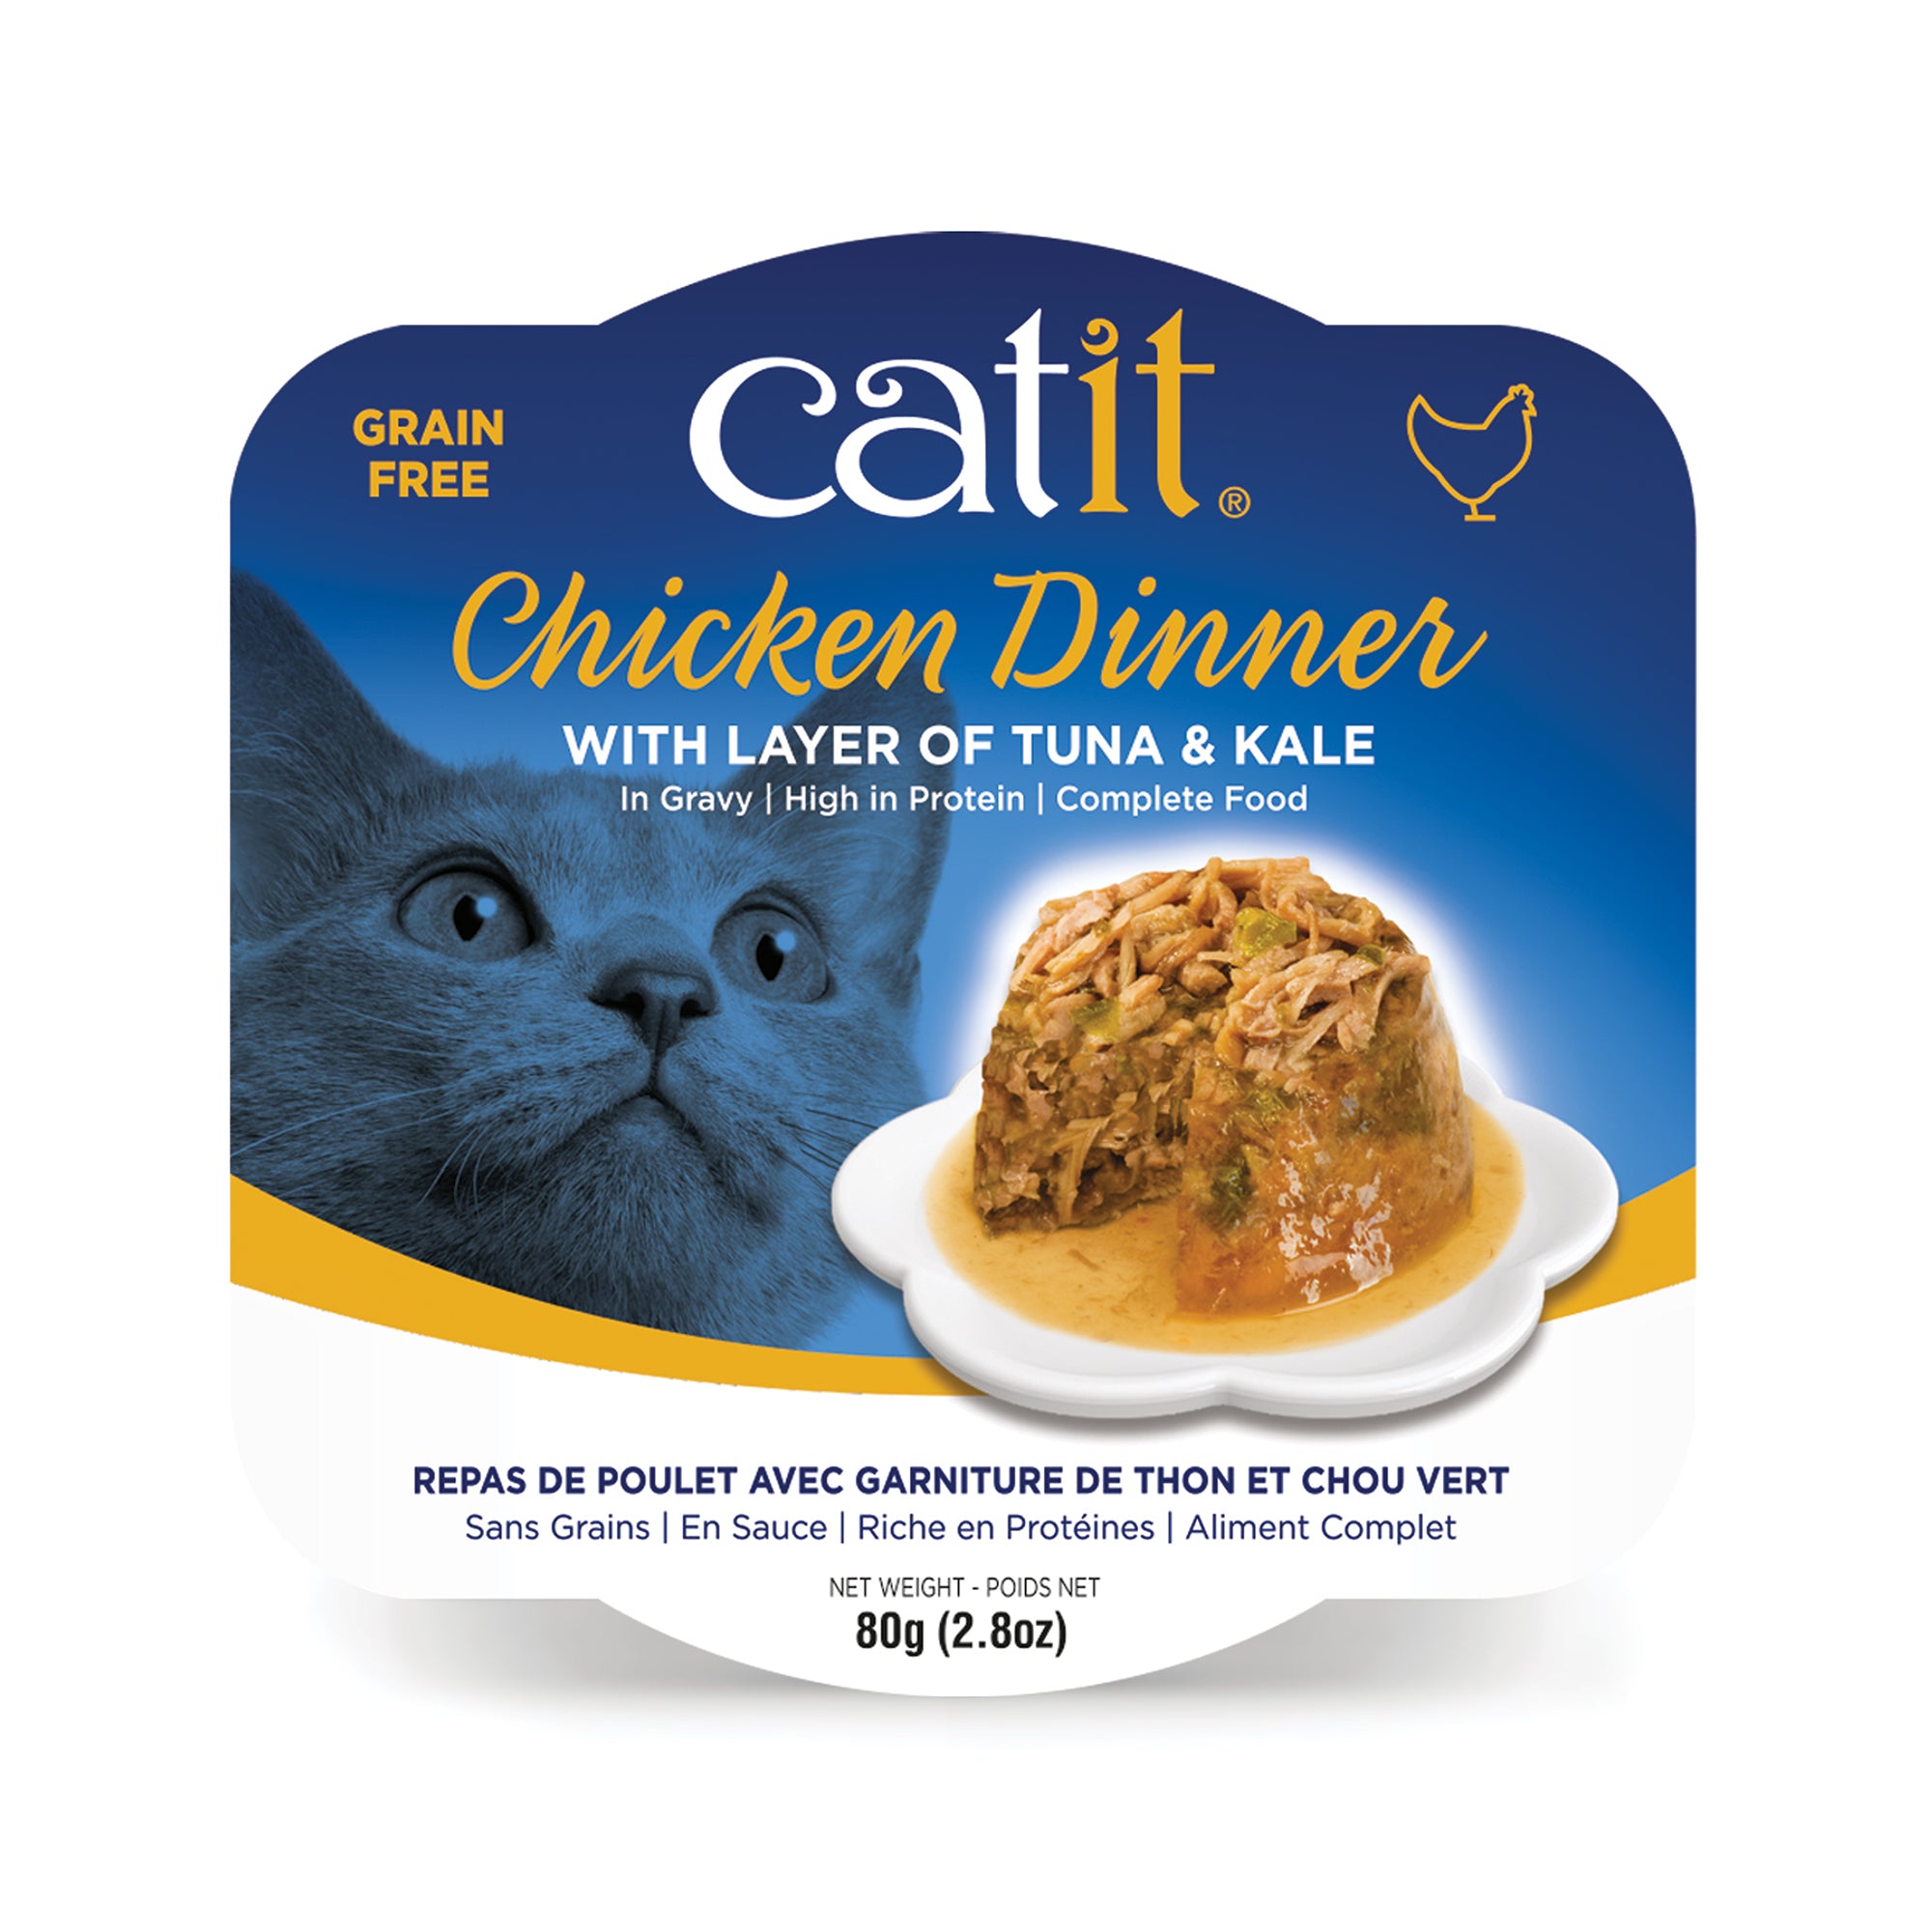 Catit Chicken Dinner with Tuna & Kale - 80 g (2.8 oz)